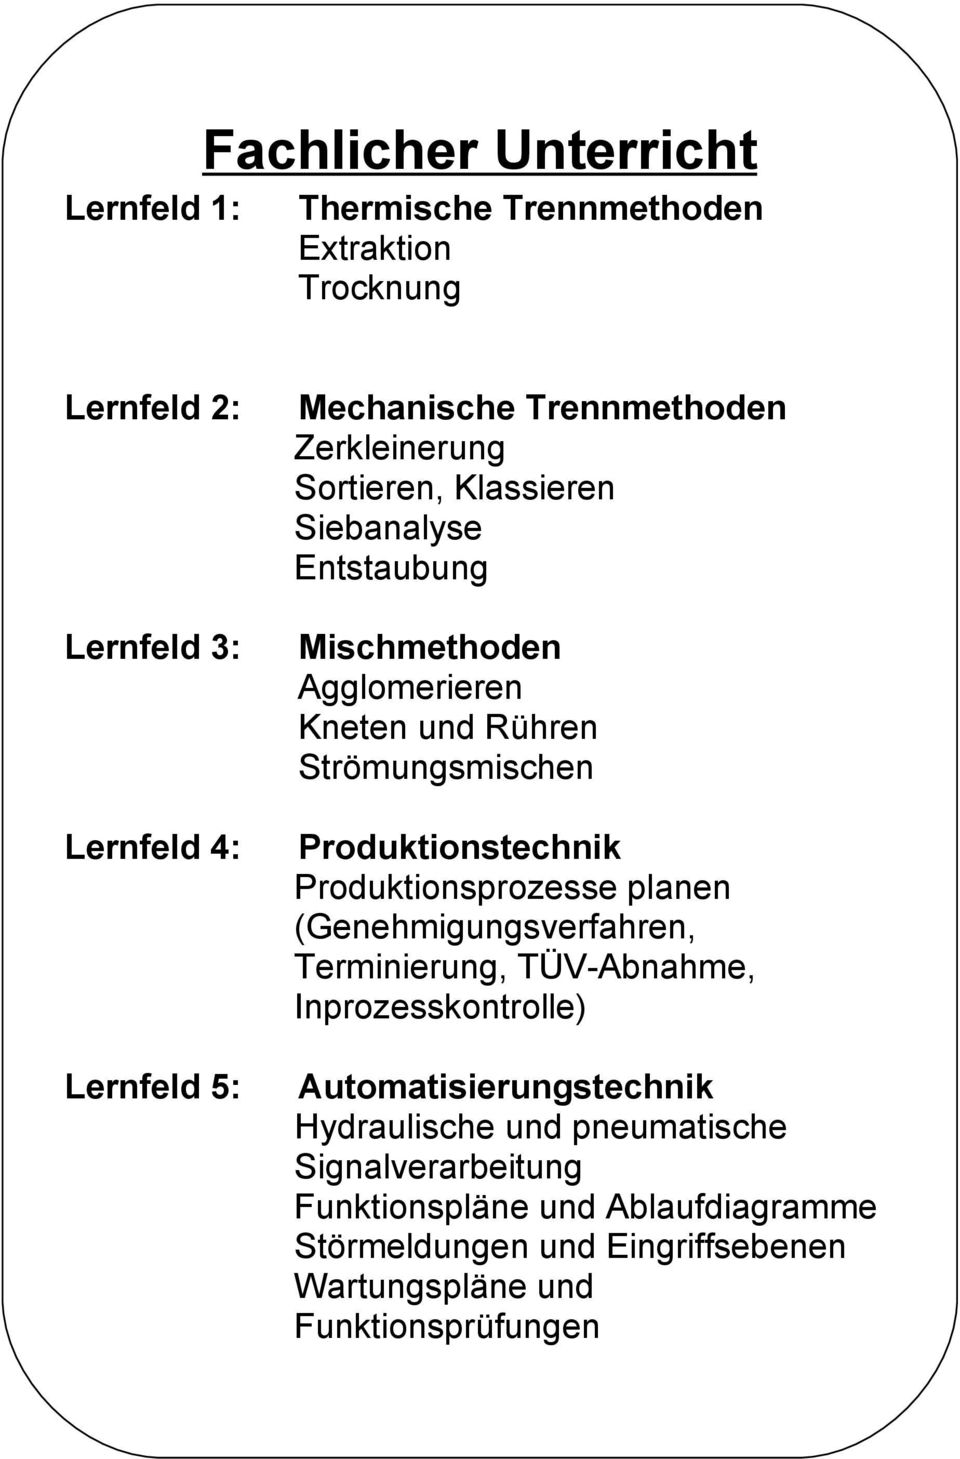 Produktionstechnik Produktionsprozesse planen (Genehmigungsverfahren, Terminierung, TÜV-Abnahme, Inprozesskontrolle)